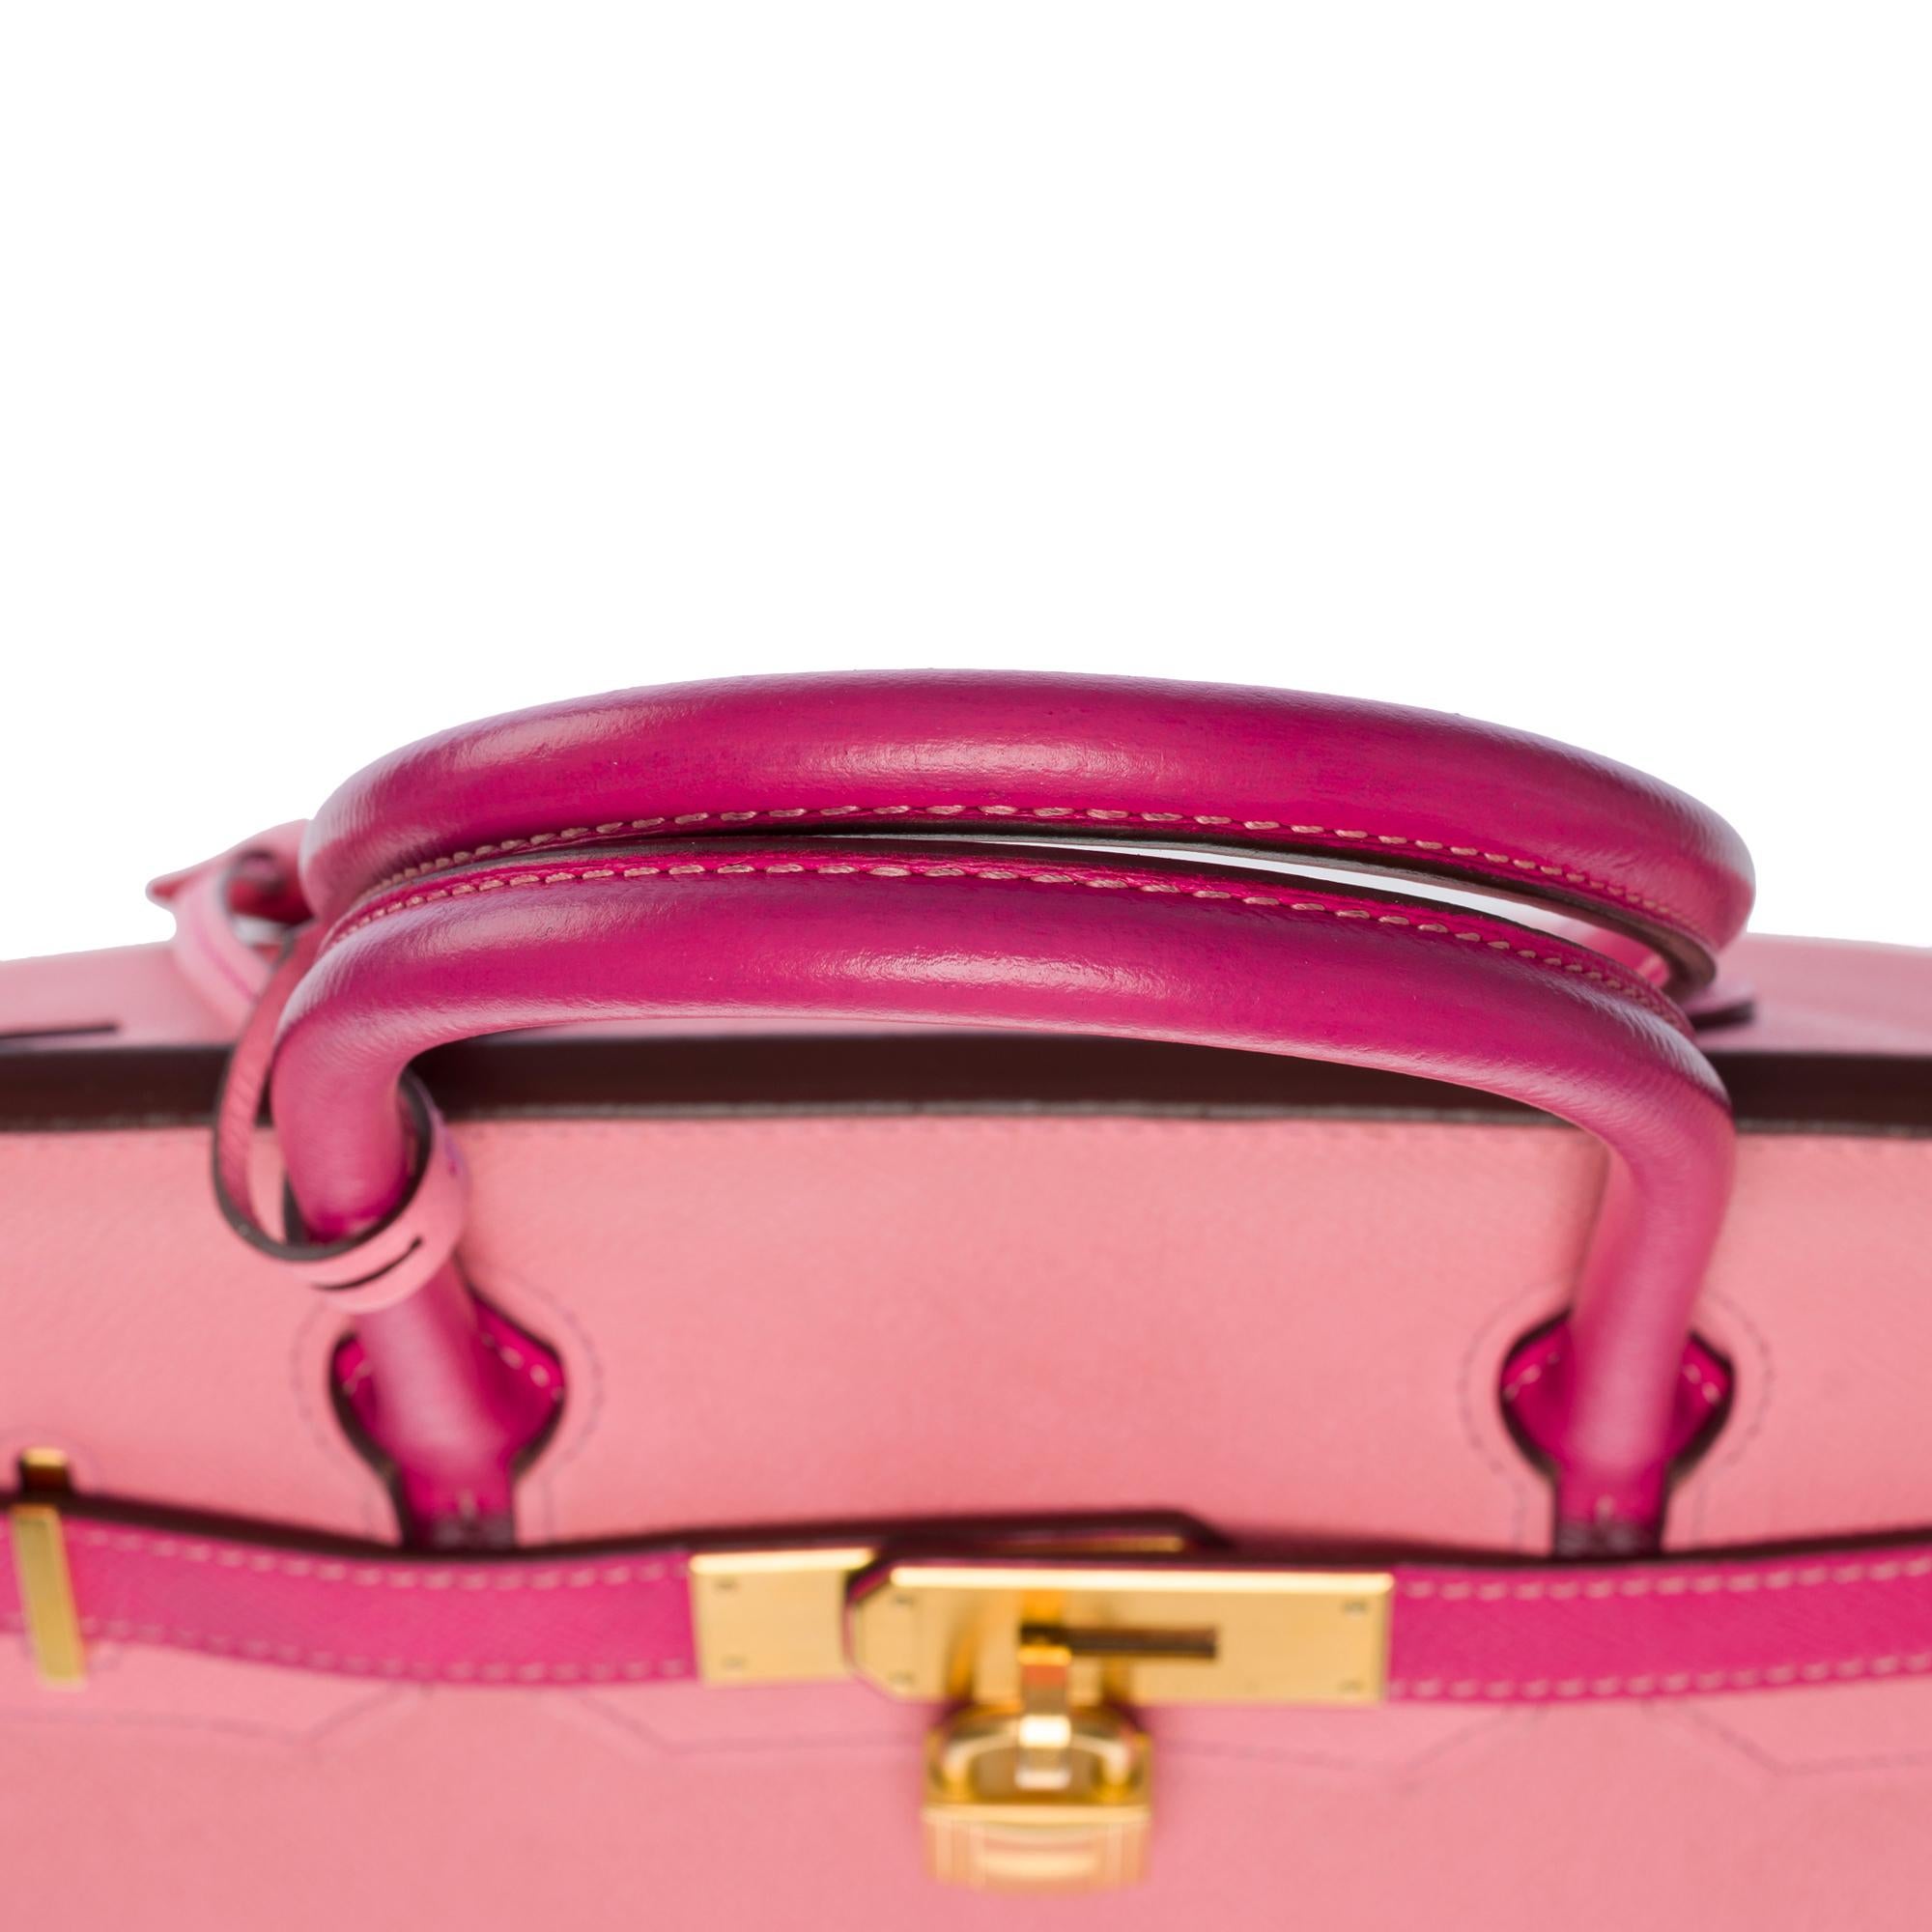  Rare Hermès Birkin 30 HSS Special Order handbag in Pink Epsom leather, BGHW For Sale 5